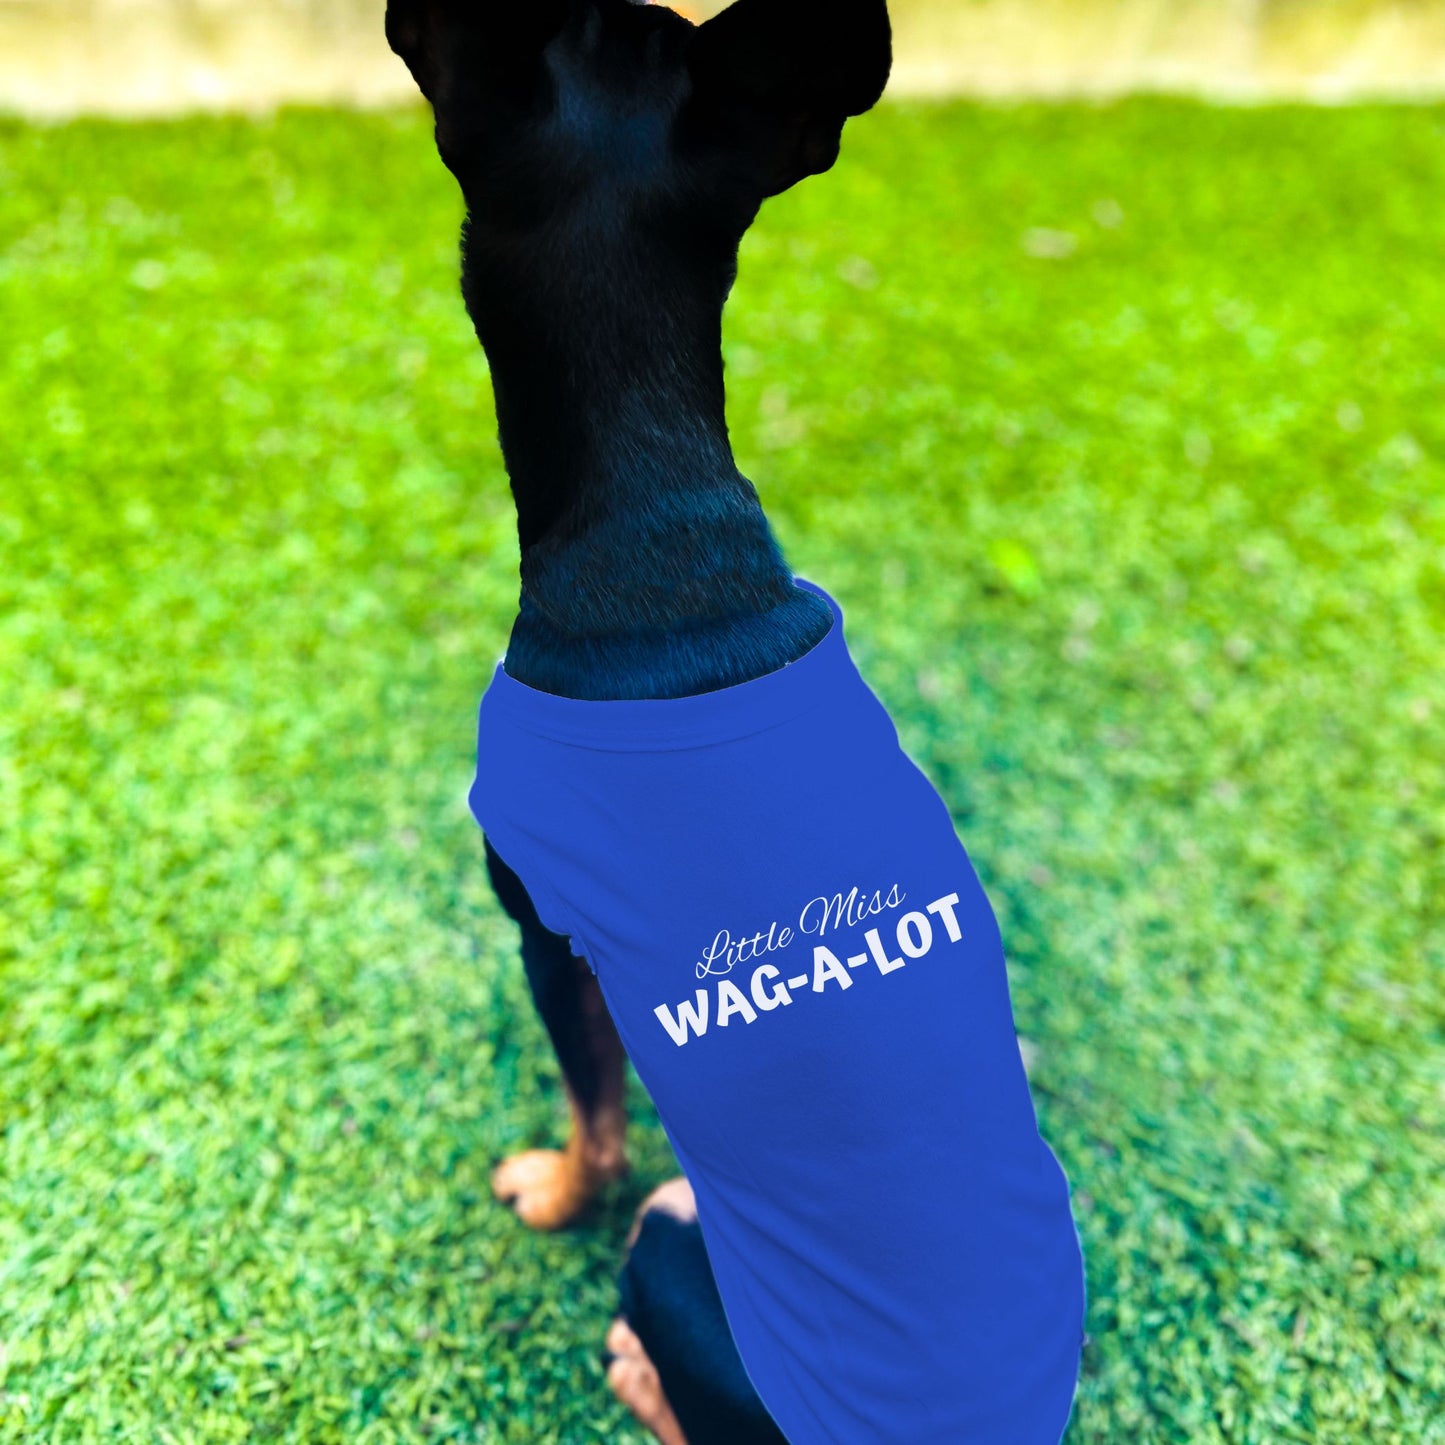 "Little Miss Wag-A-Lot" Dog Shirt